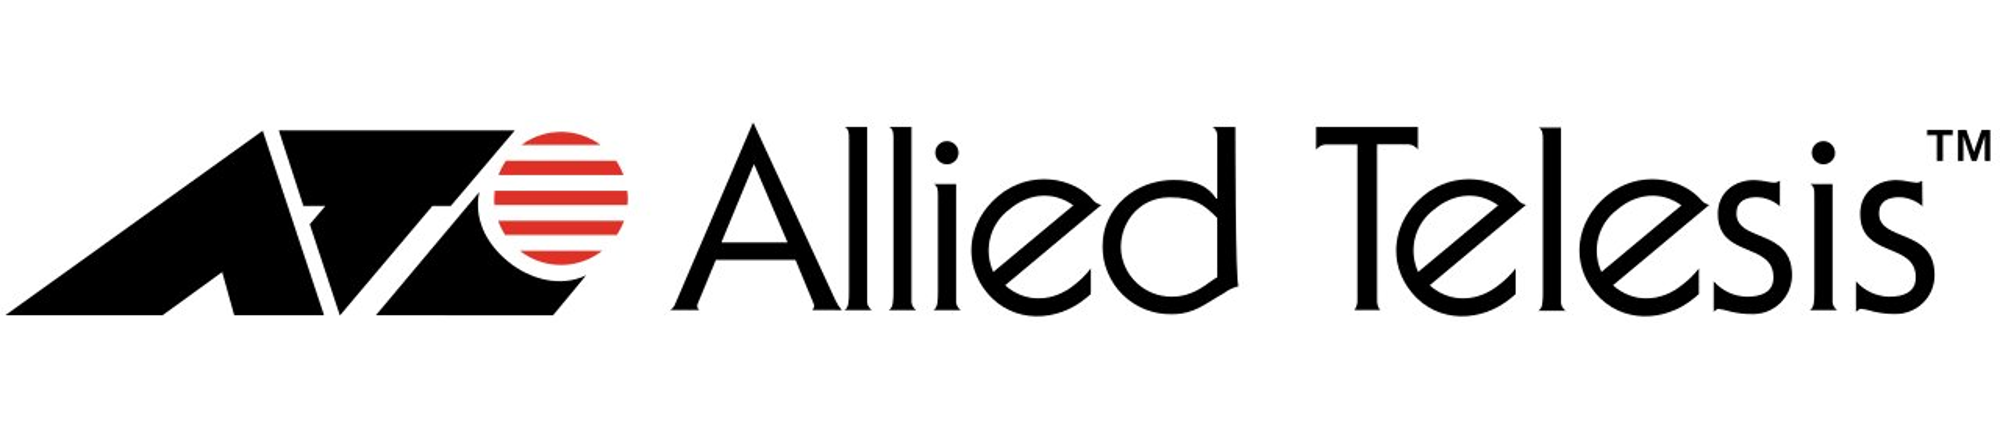 allied-telesis